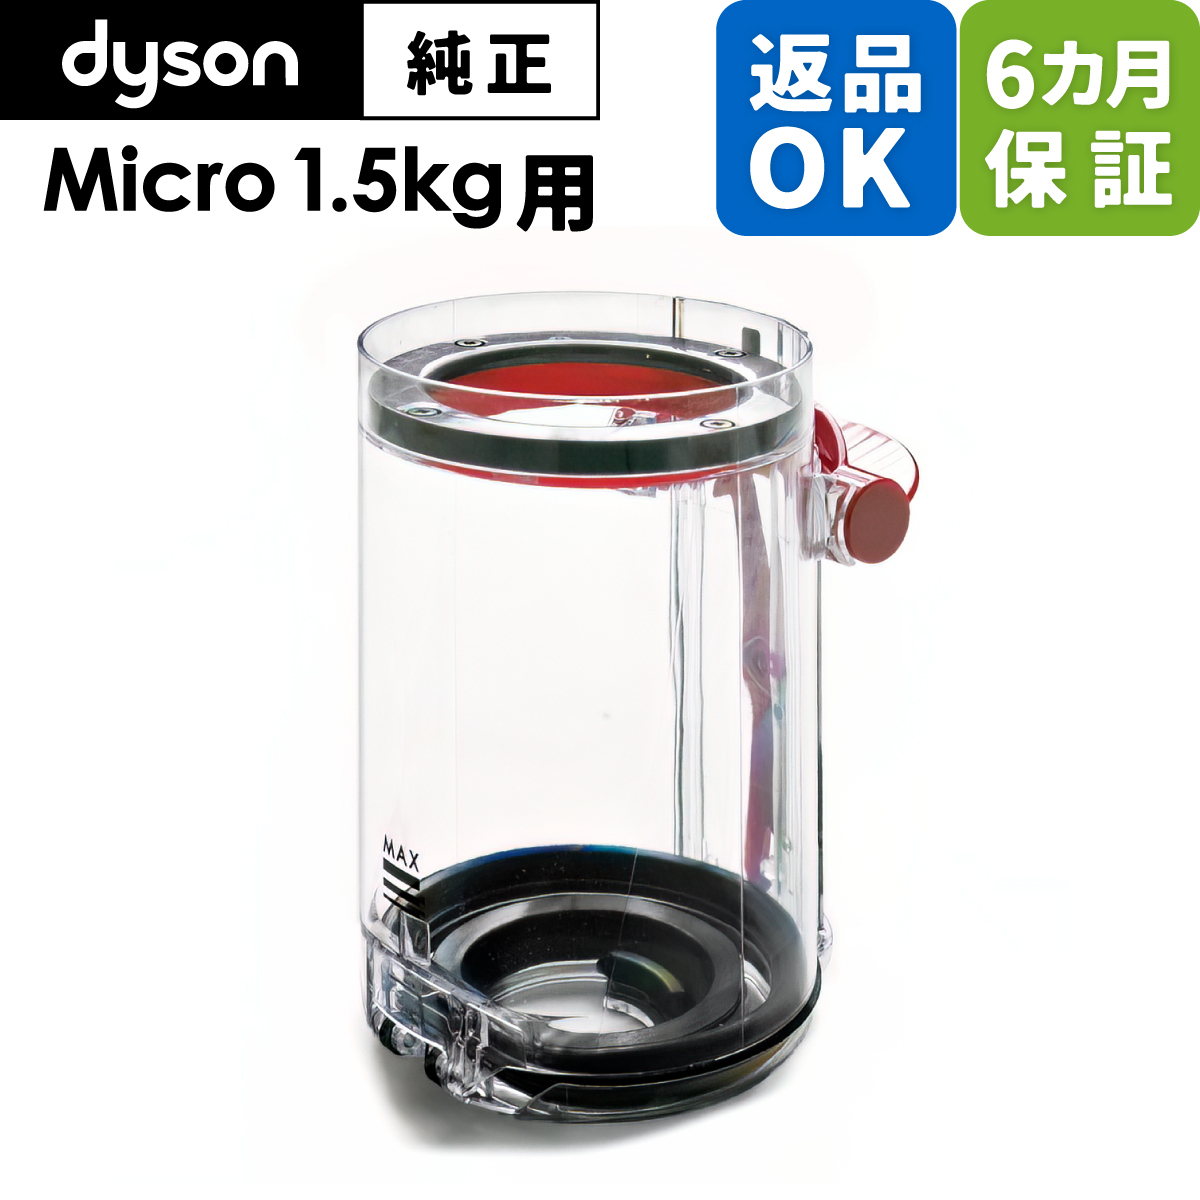 Dyson ダイソン 掃除機 純正 パーツ 返品OK 6カ月保証 クリアビン Micro 1.5kg 適合 SV21 モモデル 部品 交換